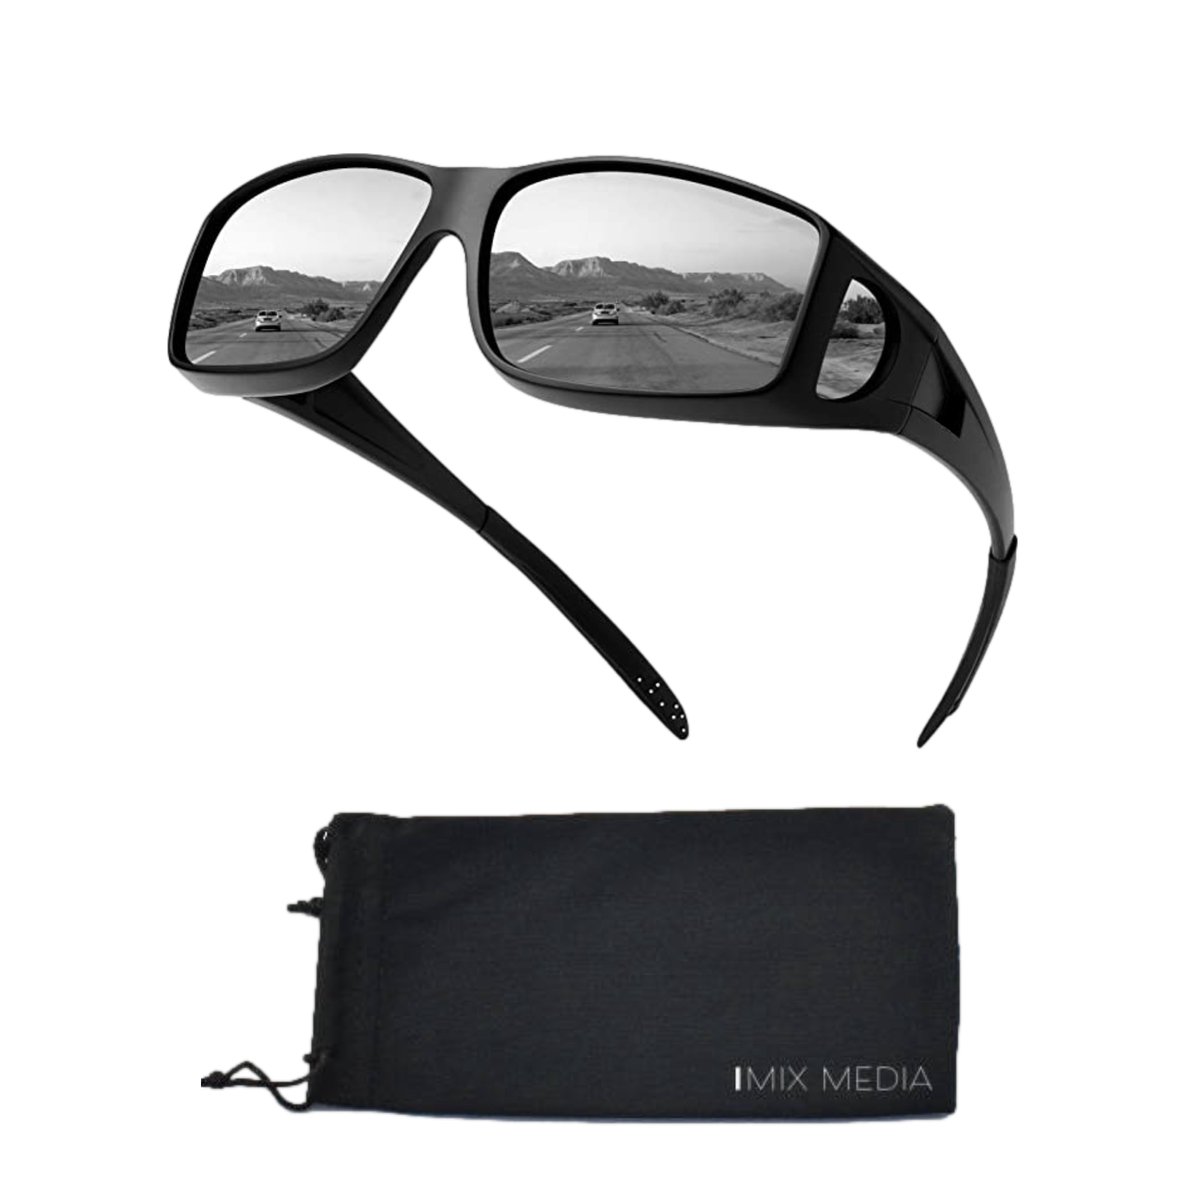 Nachtbril voor het rijden in het donker - Veilig Rijden in de nacht - Avondbril - Overzetbril - Nacht Bril voor Auto of motor - Nacht lenzen - Autobril - Inclusief opbergzakje - Zwarte lenzen